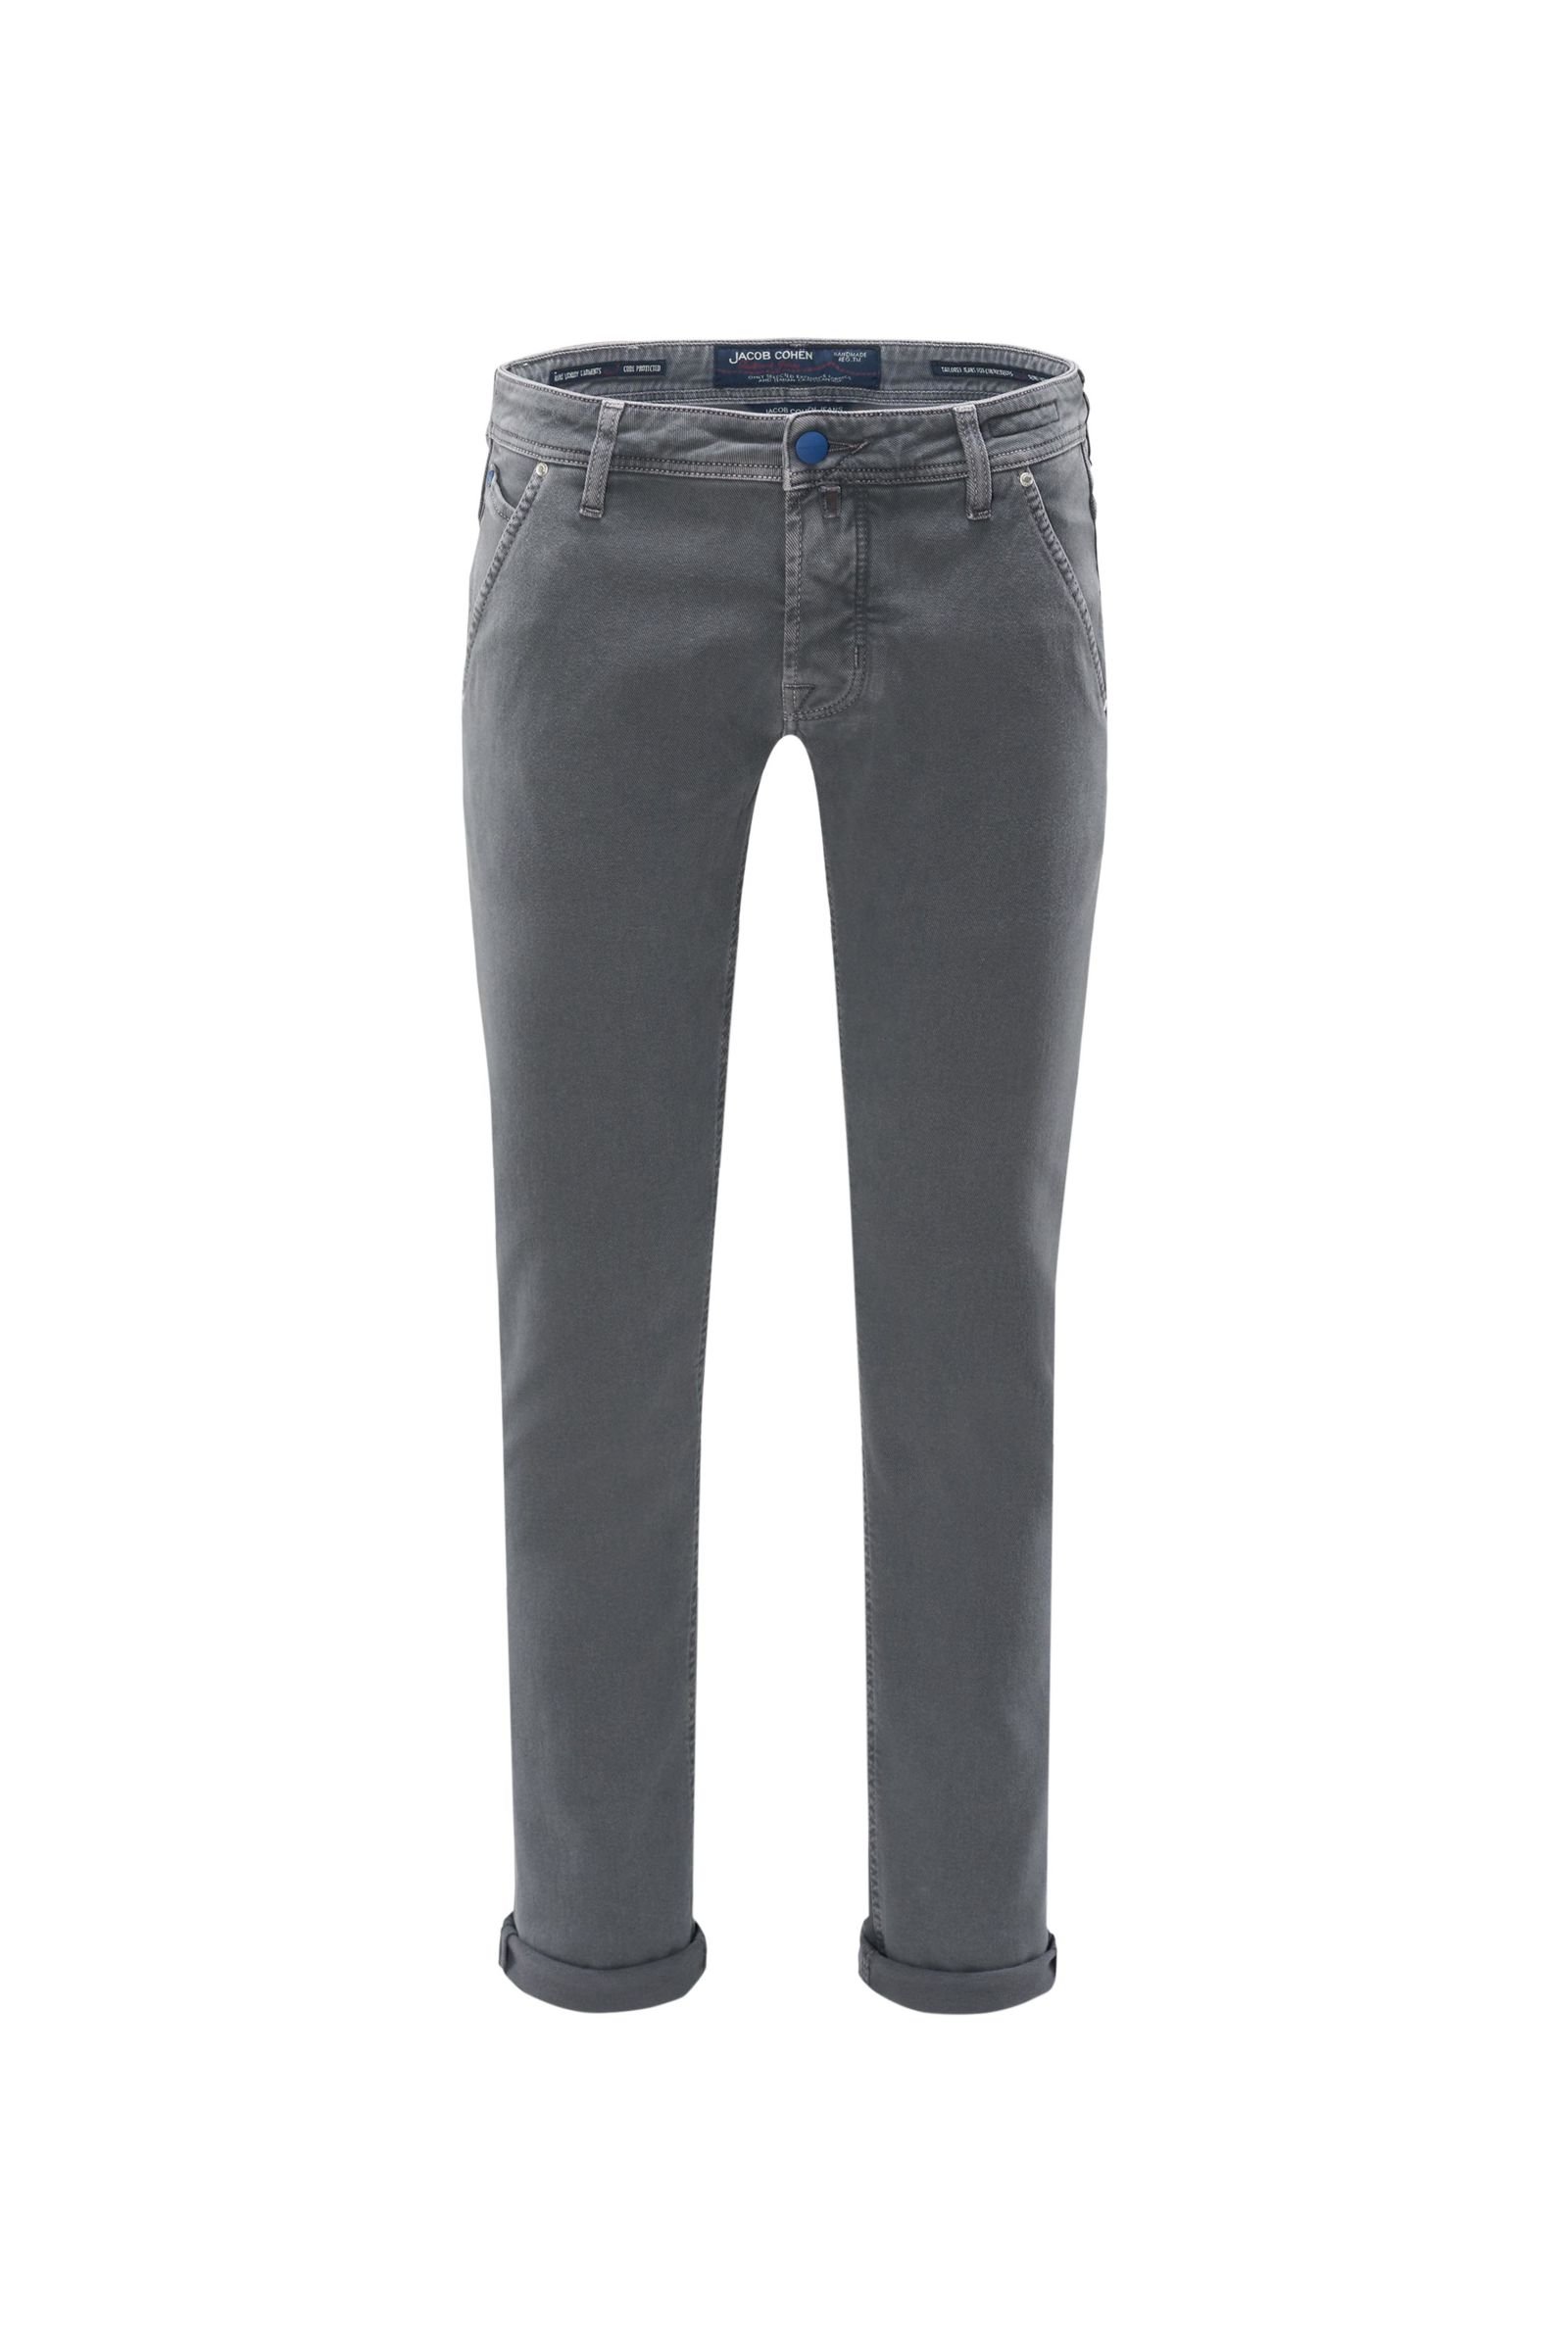 Cotton trousers 'J613 Comfort Vintage Slim Fit' grey